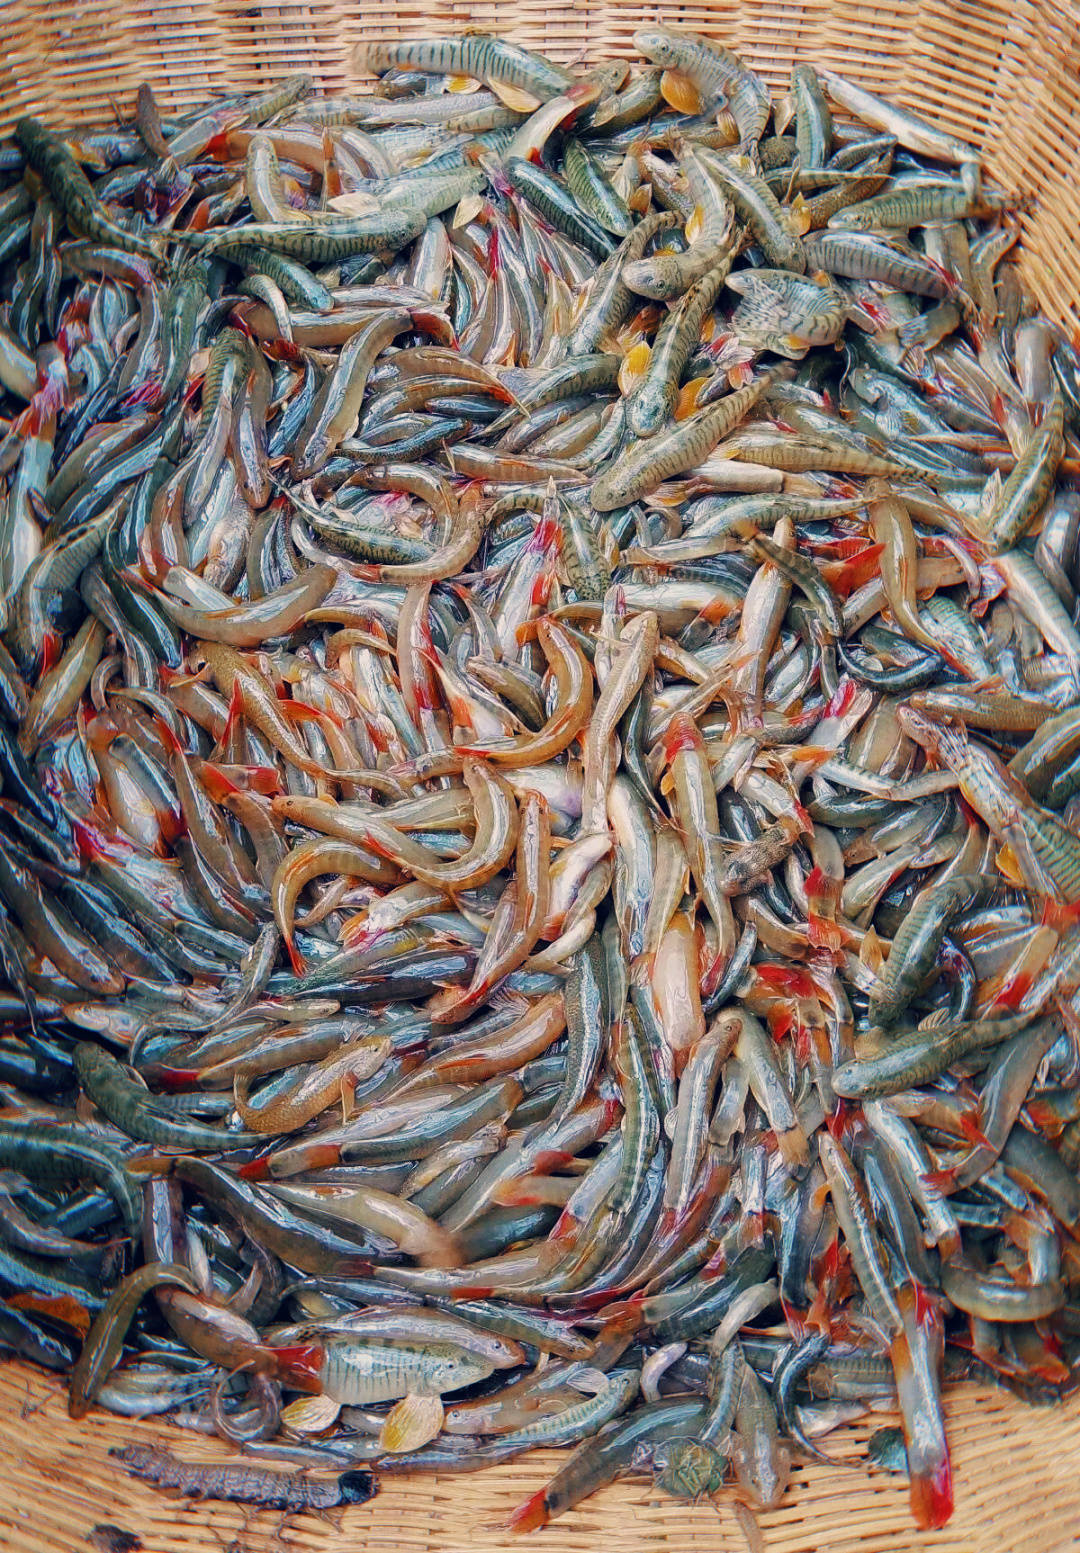 是我国澜沧江流域生长的一种特有珍稀野生鱼类